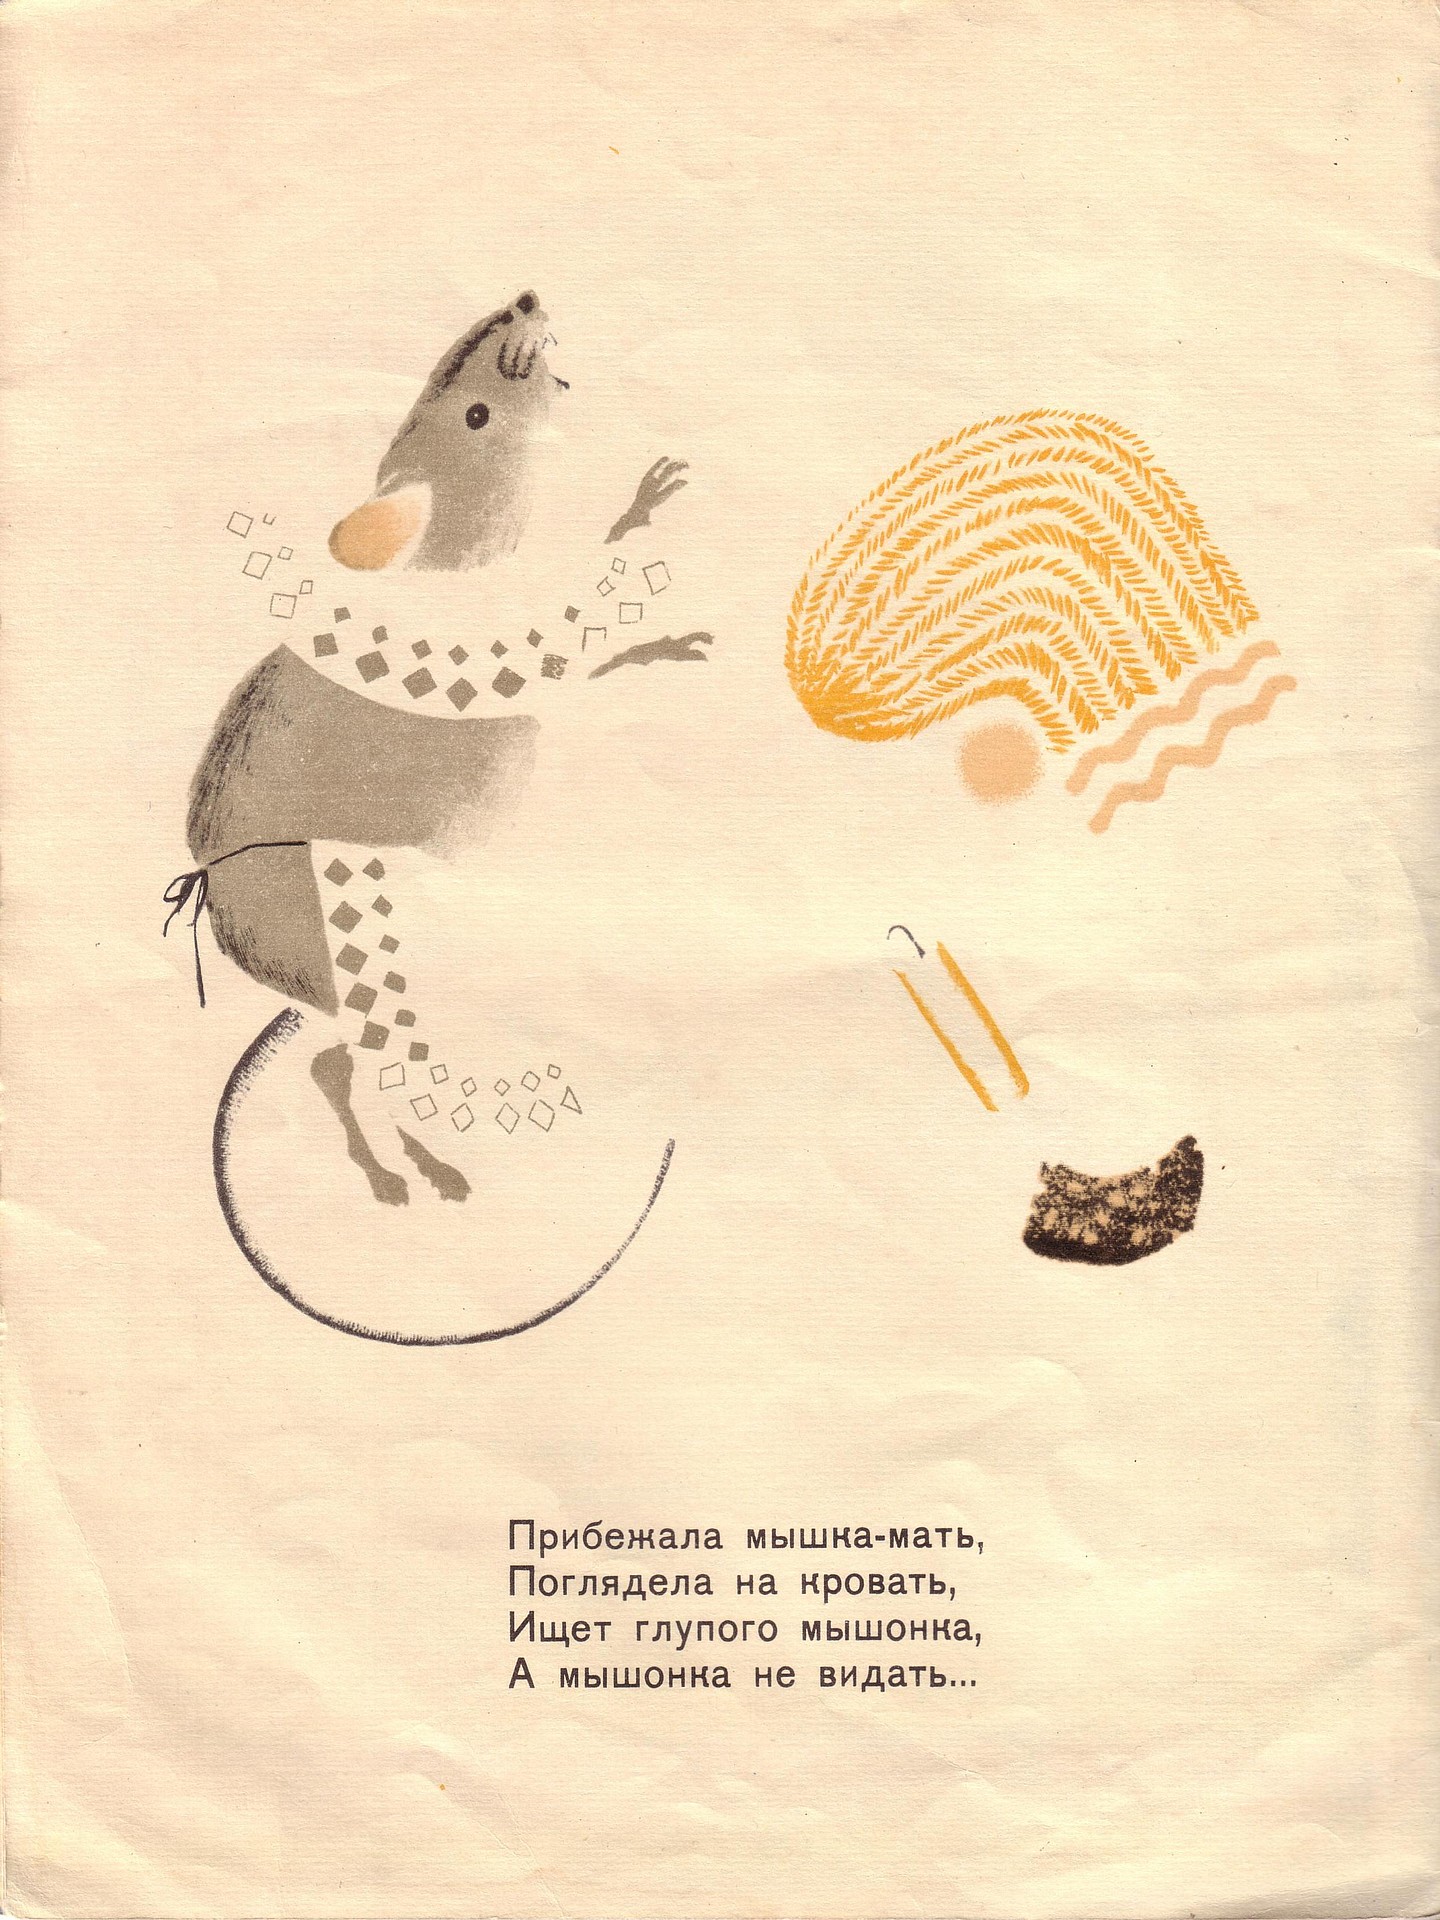 Сказка о глупом мышонке с картинками. Сказка о глупом мышонке 1925. Иллюстрации к произведениям Маршака сказка о глупом мышонке. Произведения Маршака сказка о глупом мышонке.